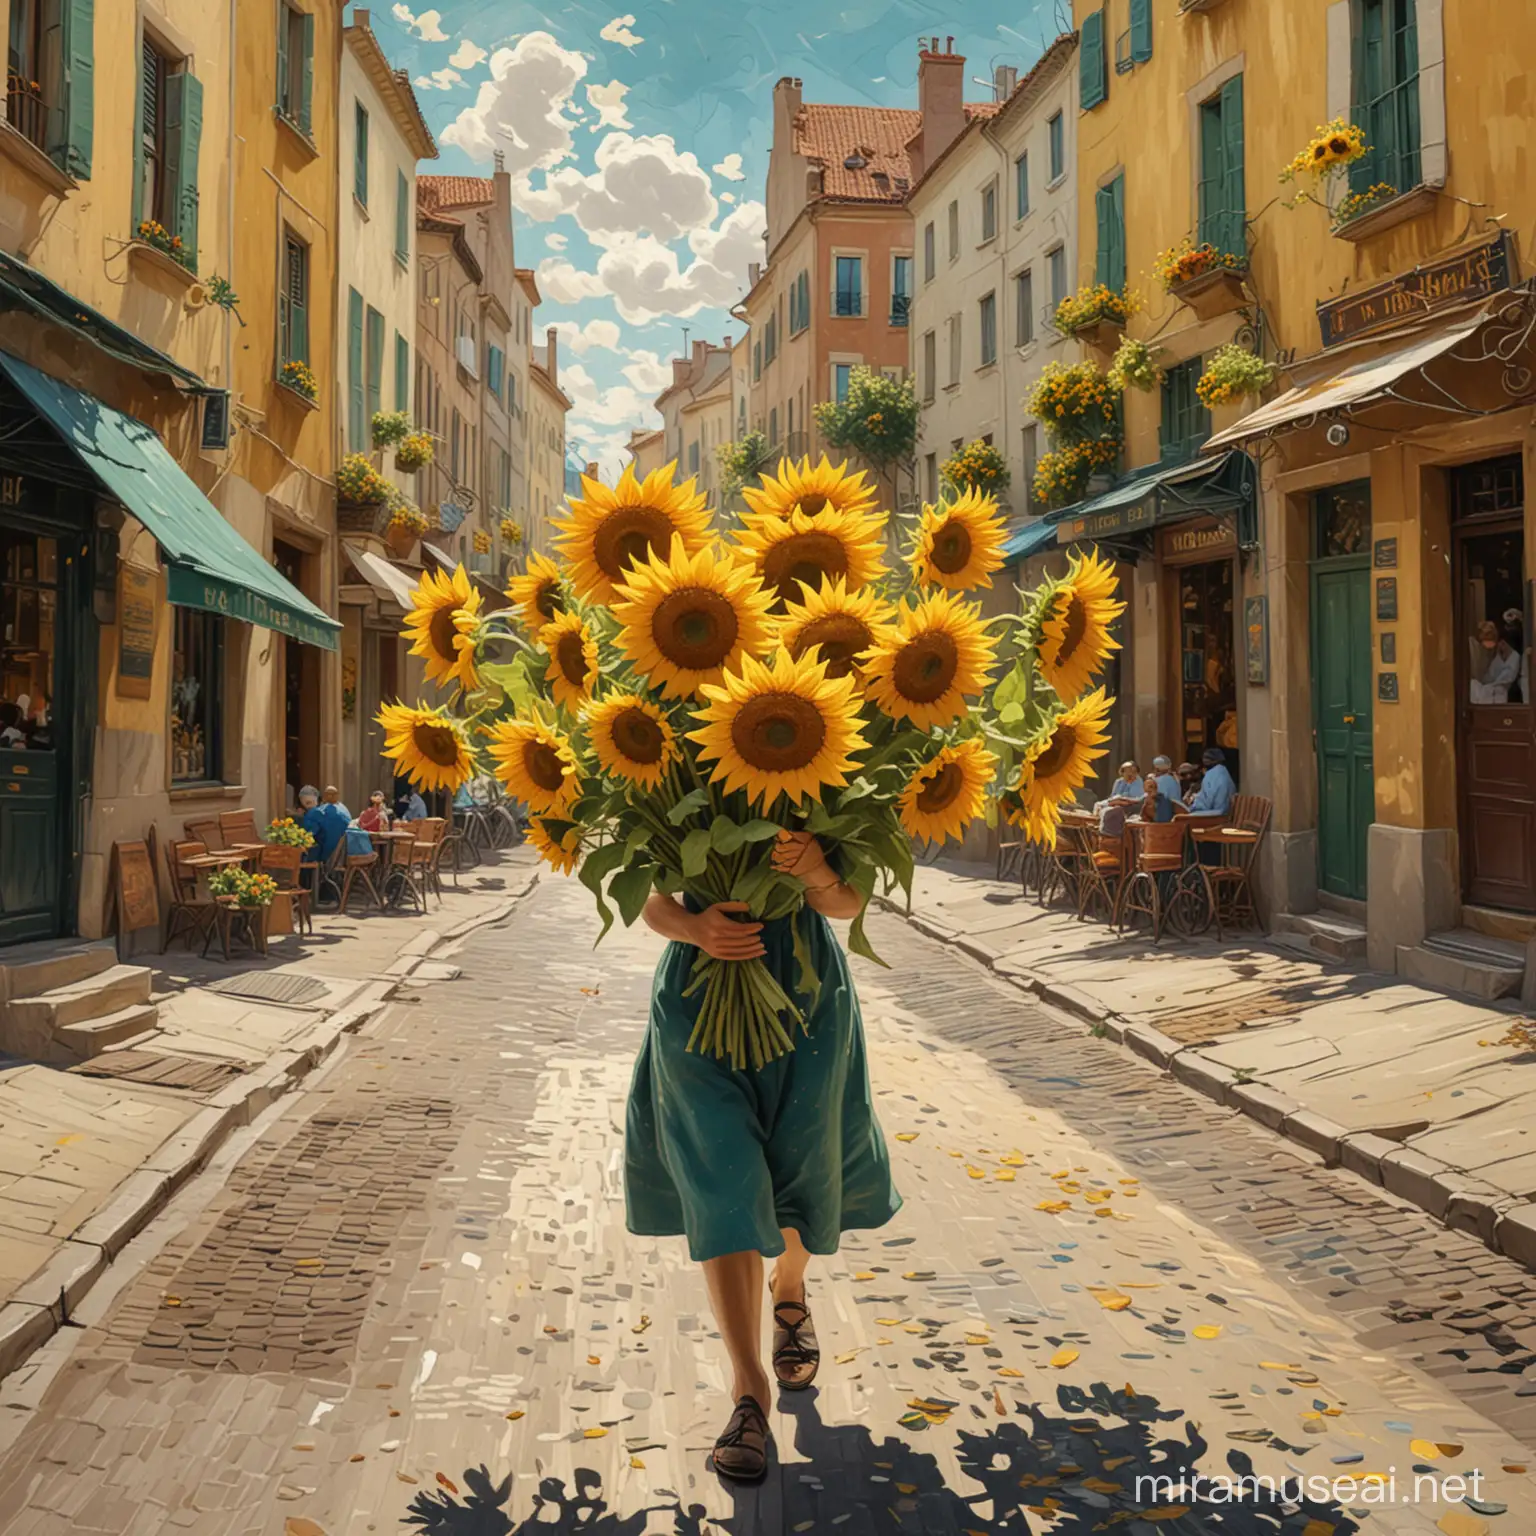 Sonnenblumen wirbeln durch die Luft. Van gogh stil. Der maler spaziert durch die Straßen 